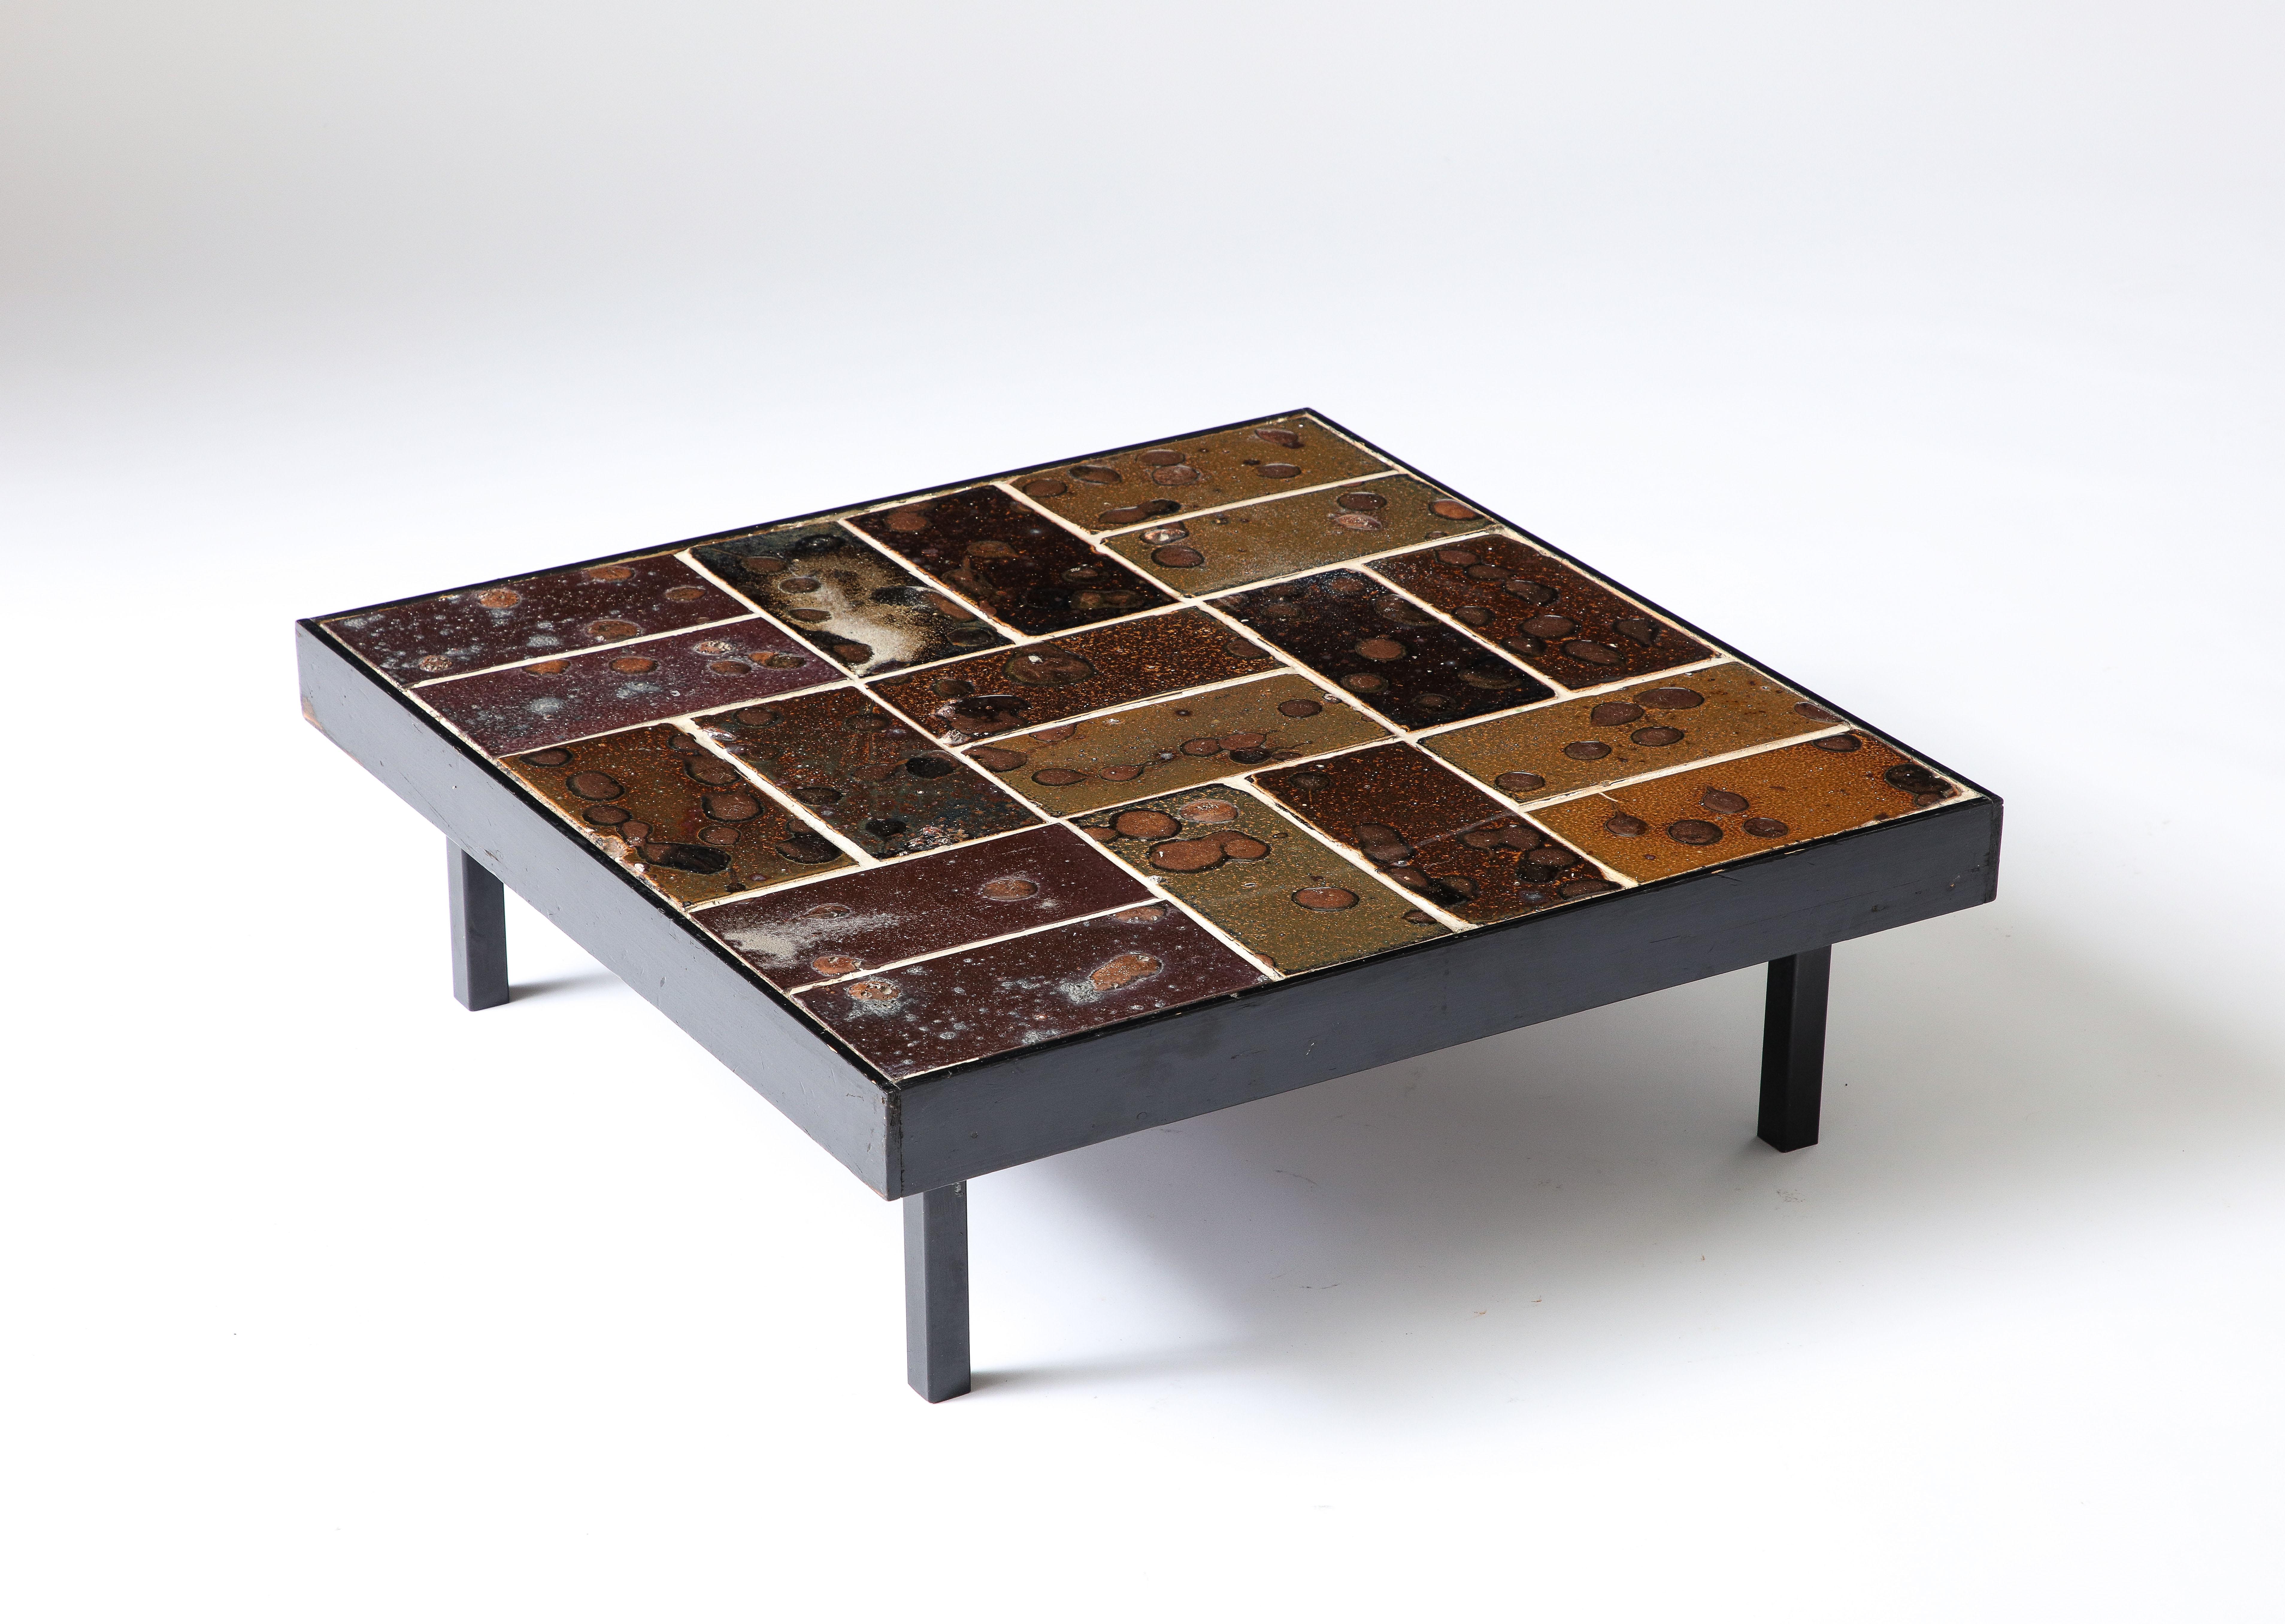 Cette table présente des carreaux de céramique émaillée avec beaucoup de texture et de variations de tons. Une pièce solide qui attire l'attention.